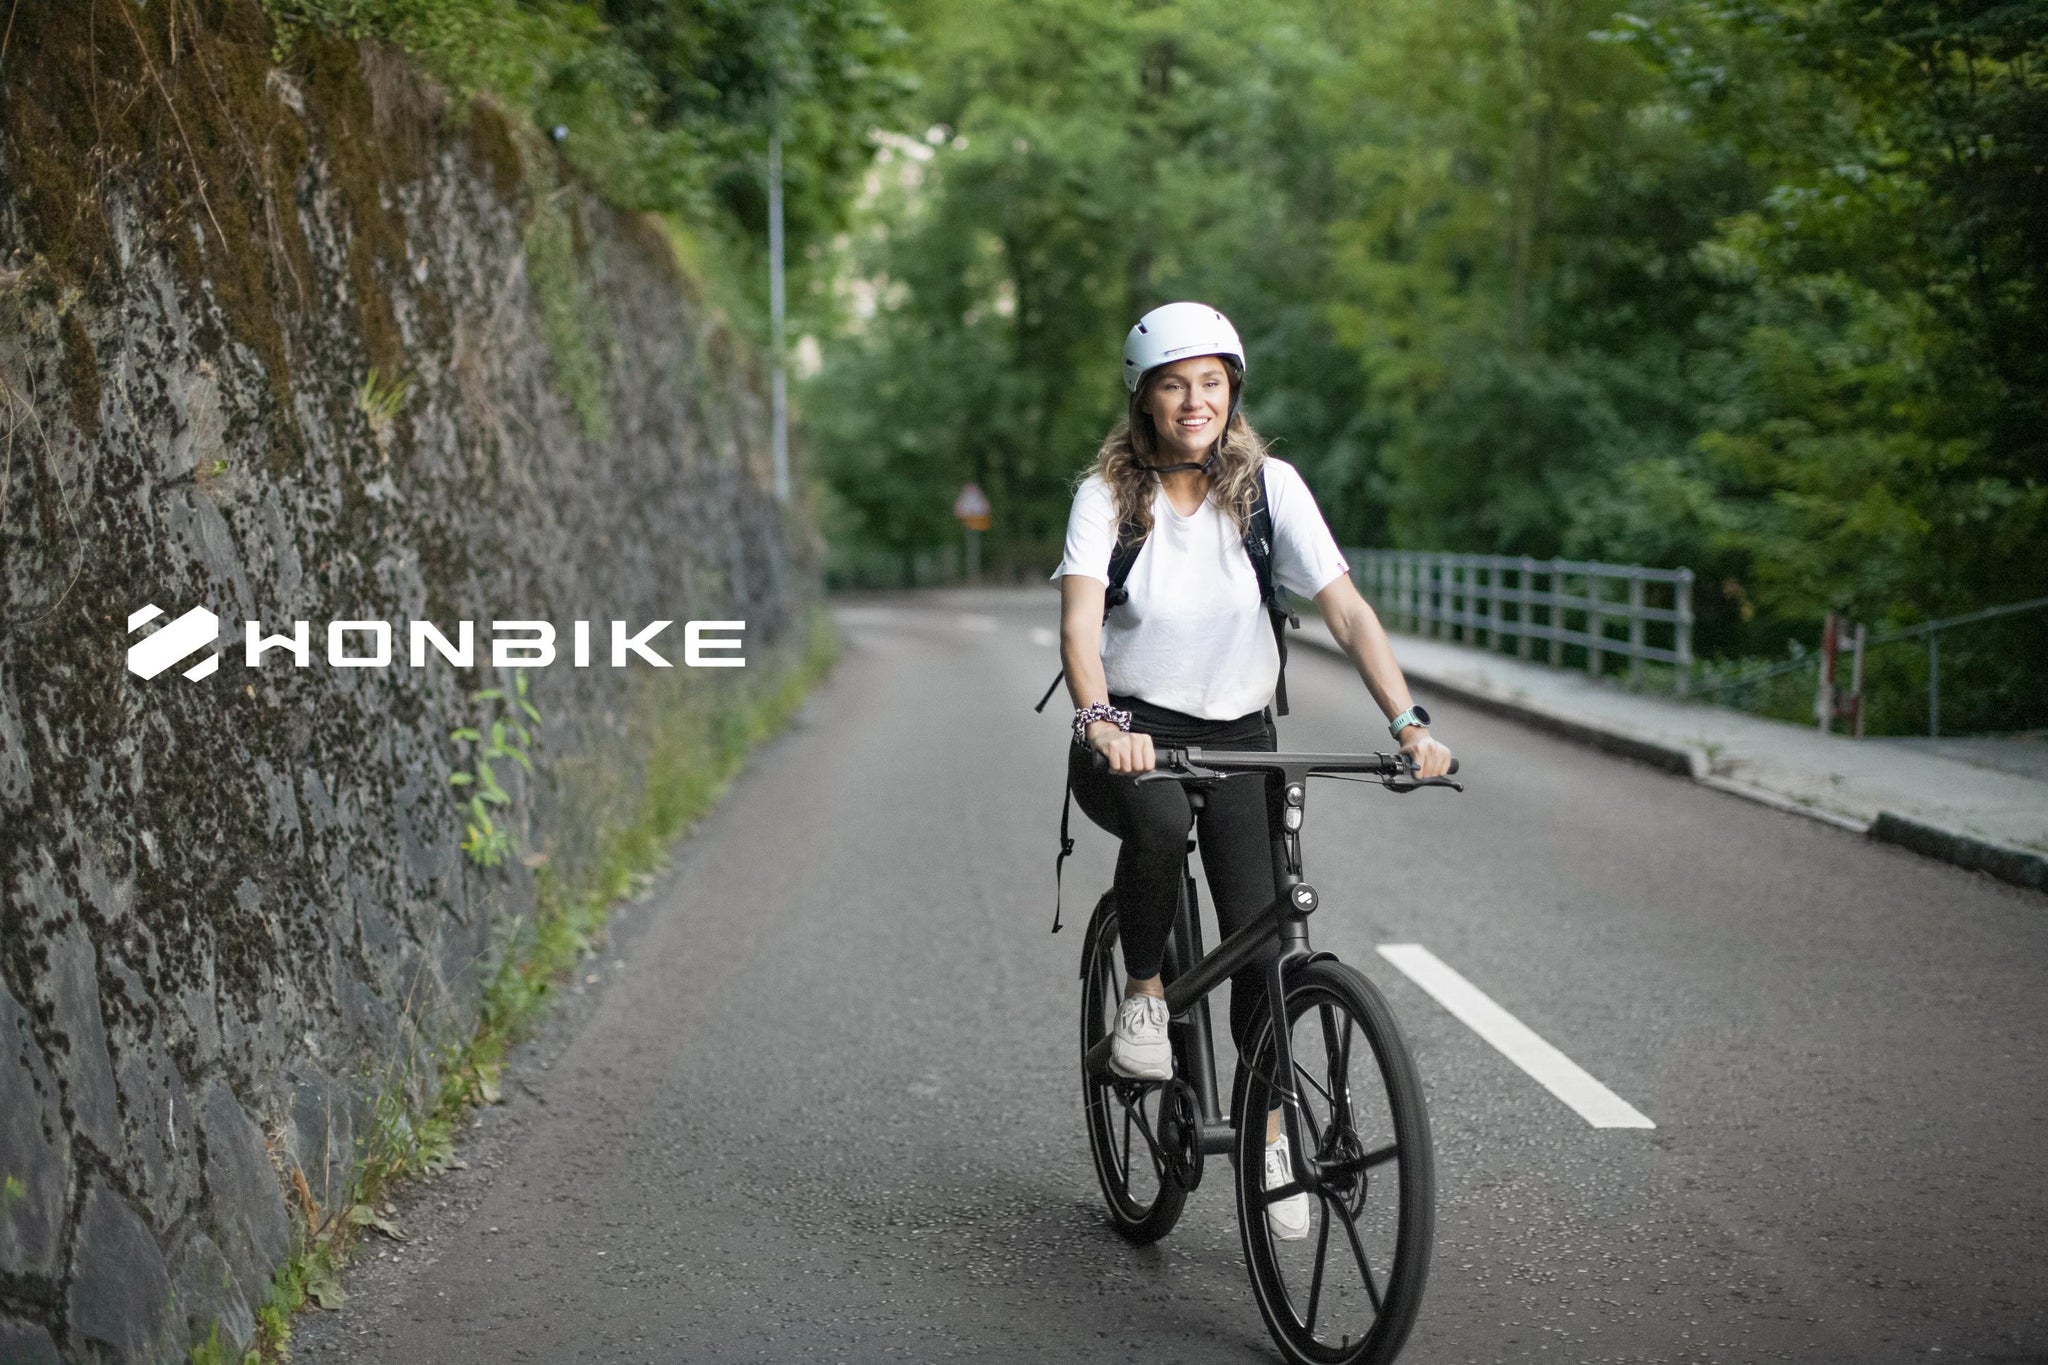 riding-honbike-long-range-electric-bike-to-explore-nature